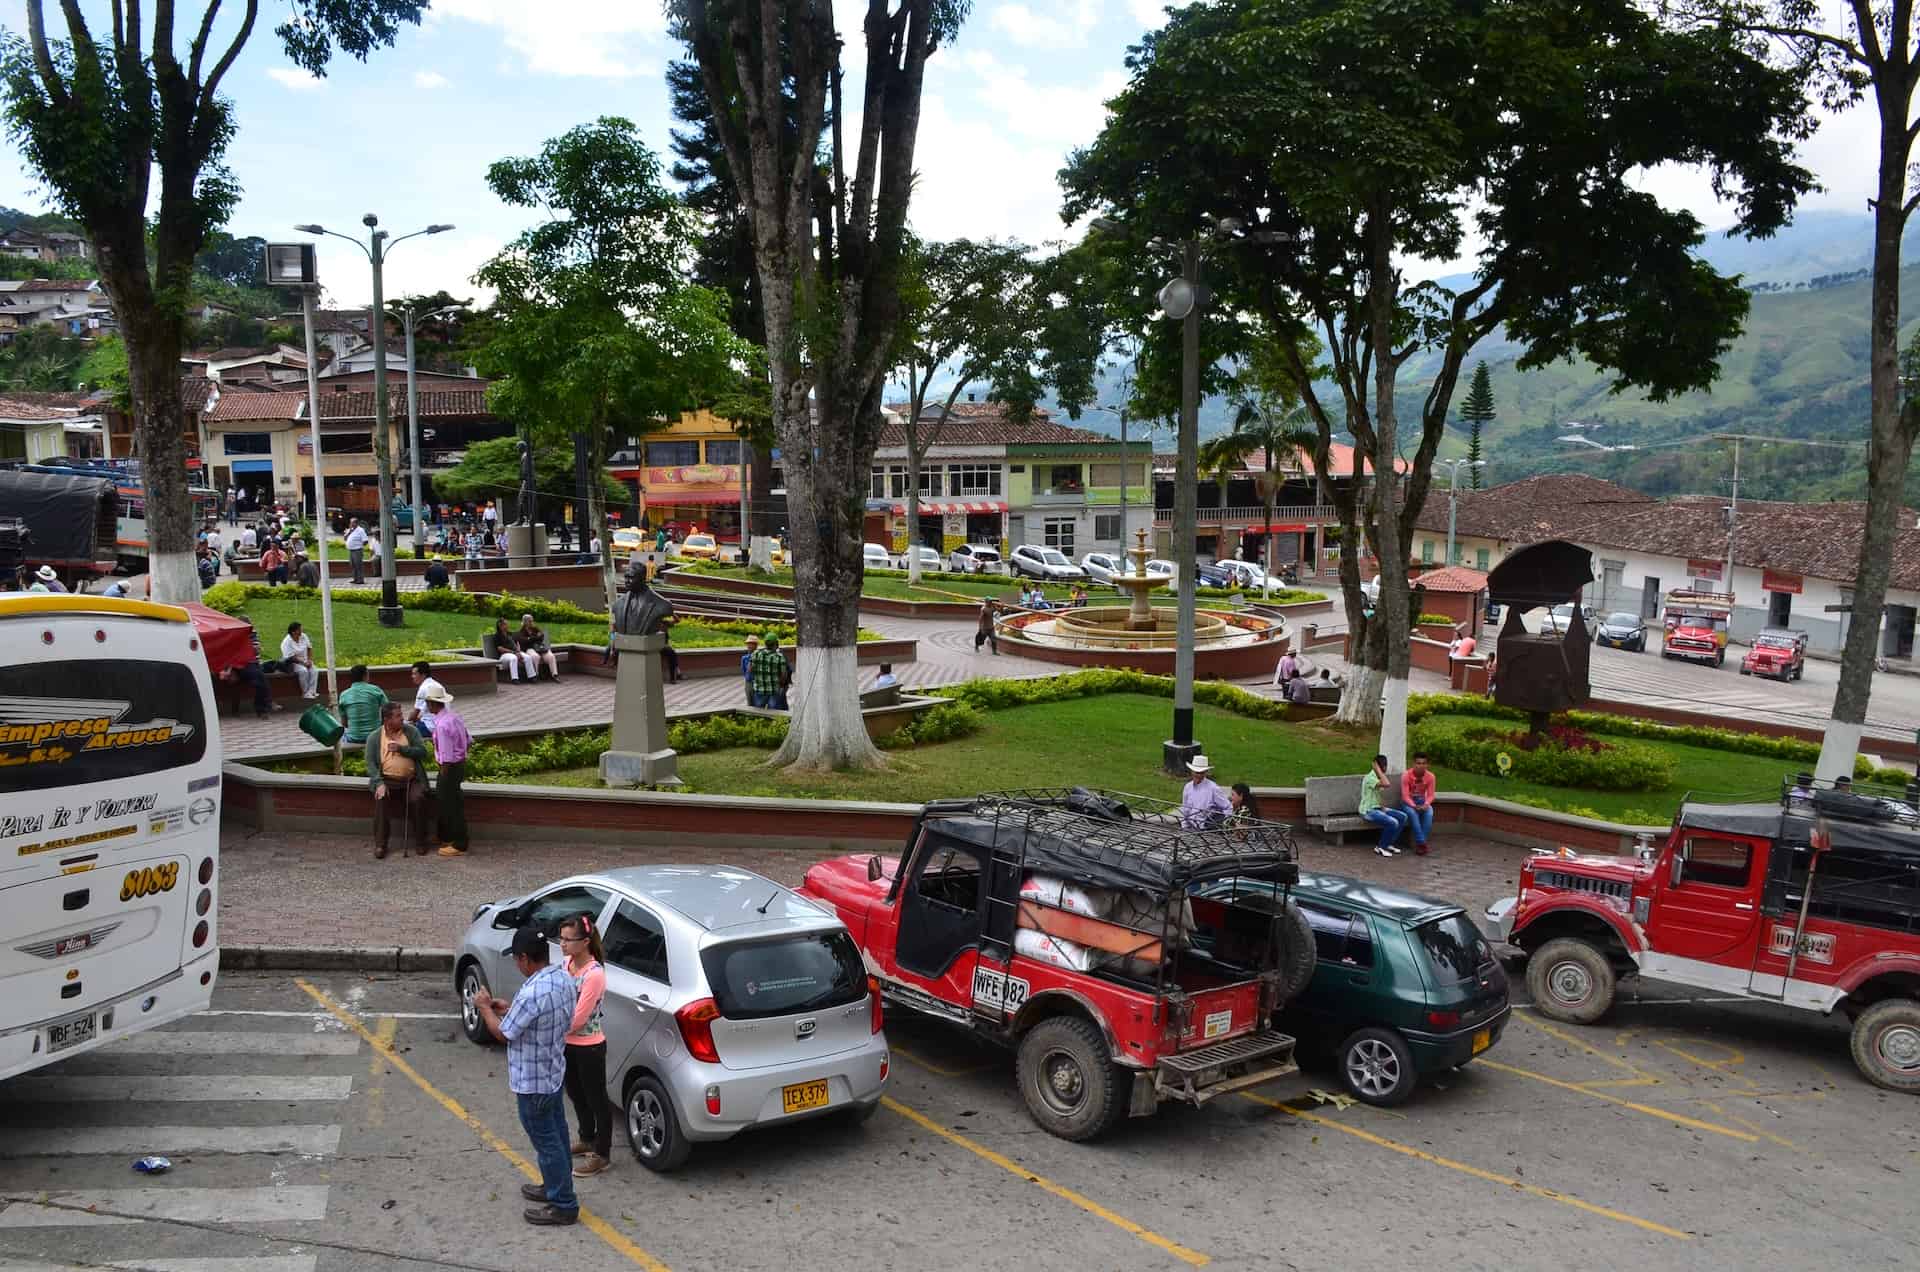 Plaza de Bolívar in Pácora, Caldas, Colombia